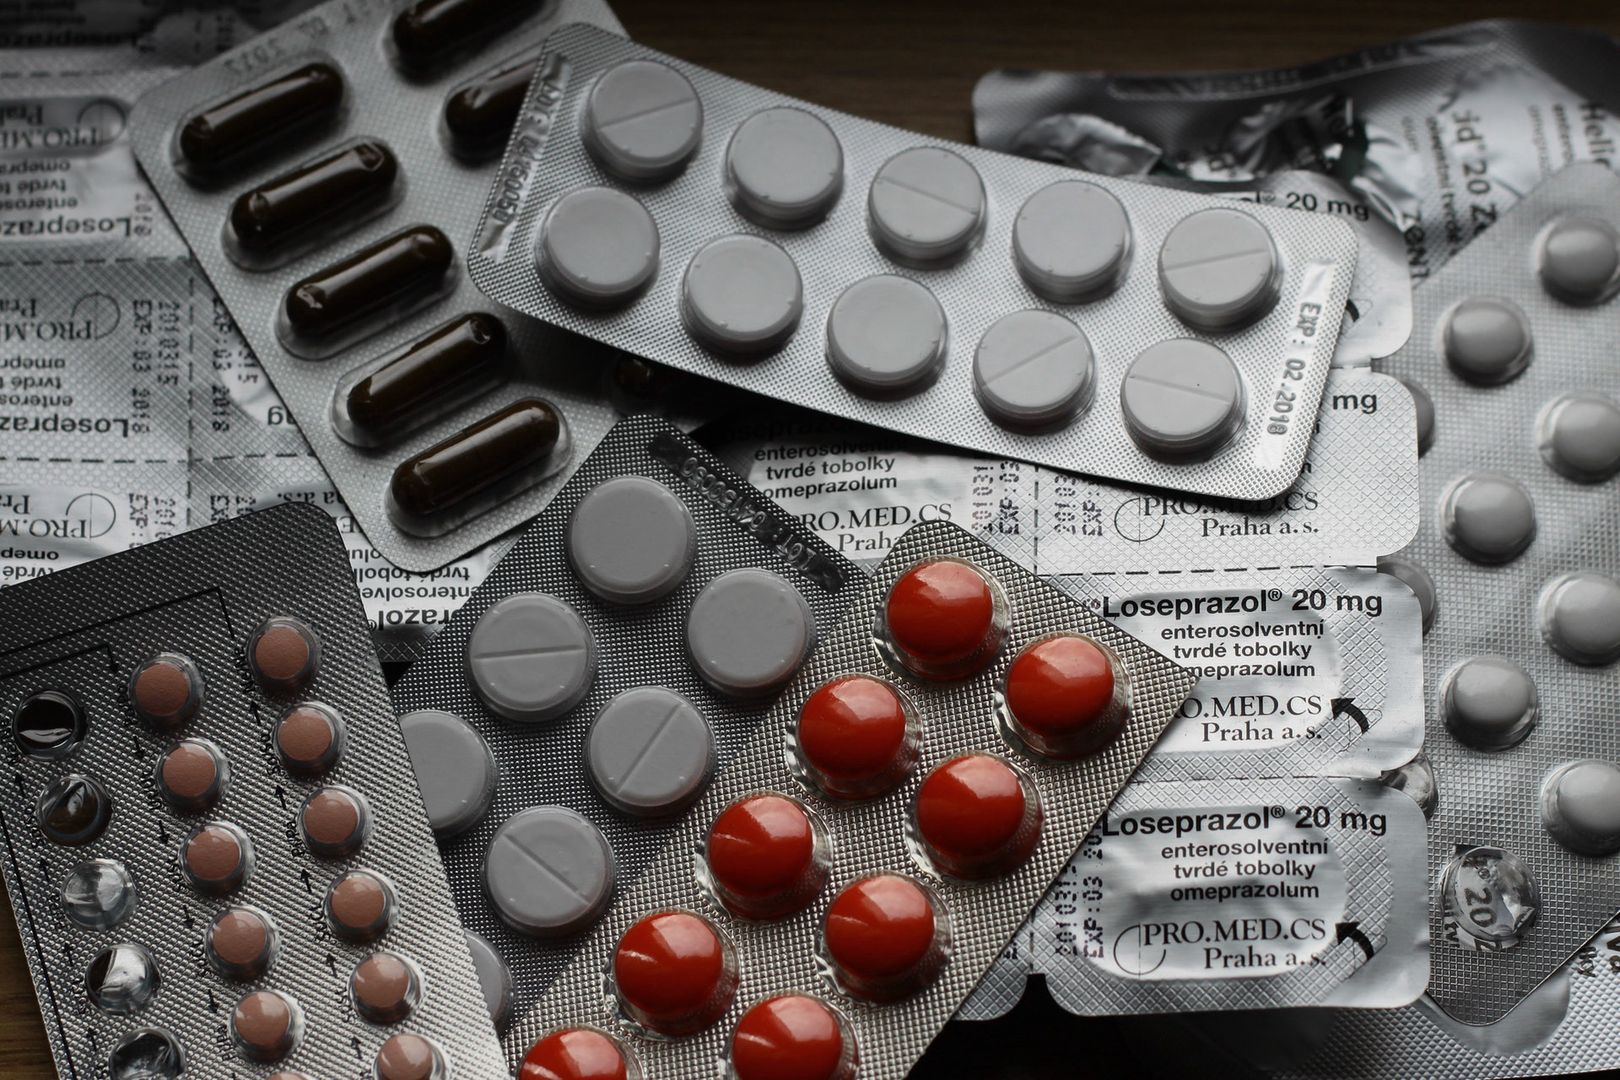 Uboczne skutki paracetamolu. Badacze ostrzegają przed znanym lekiem